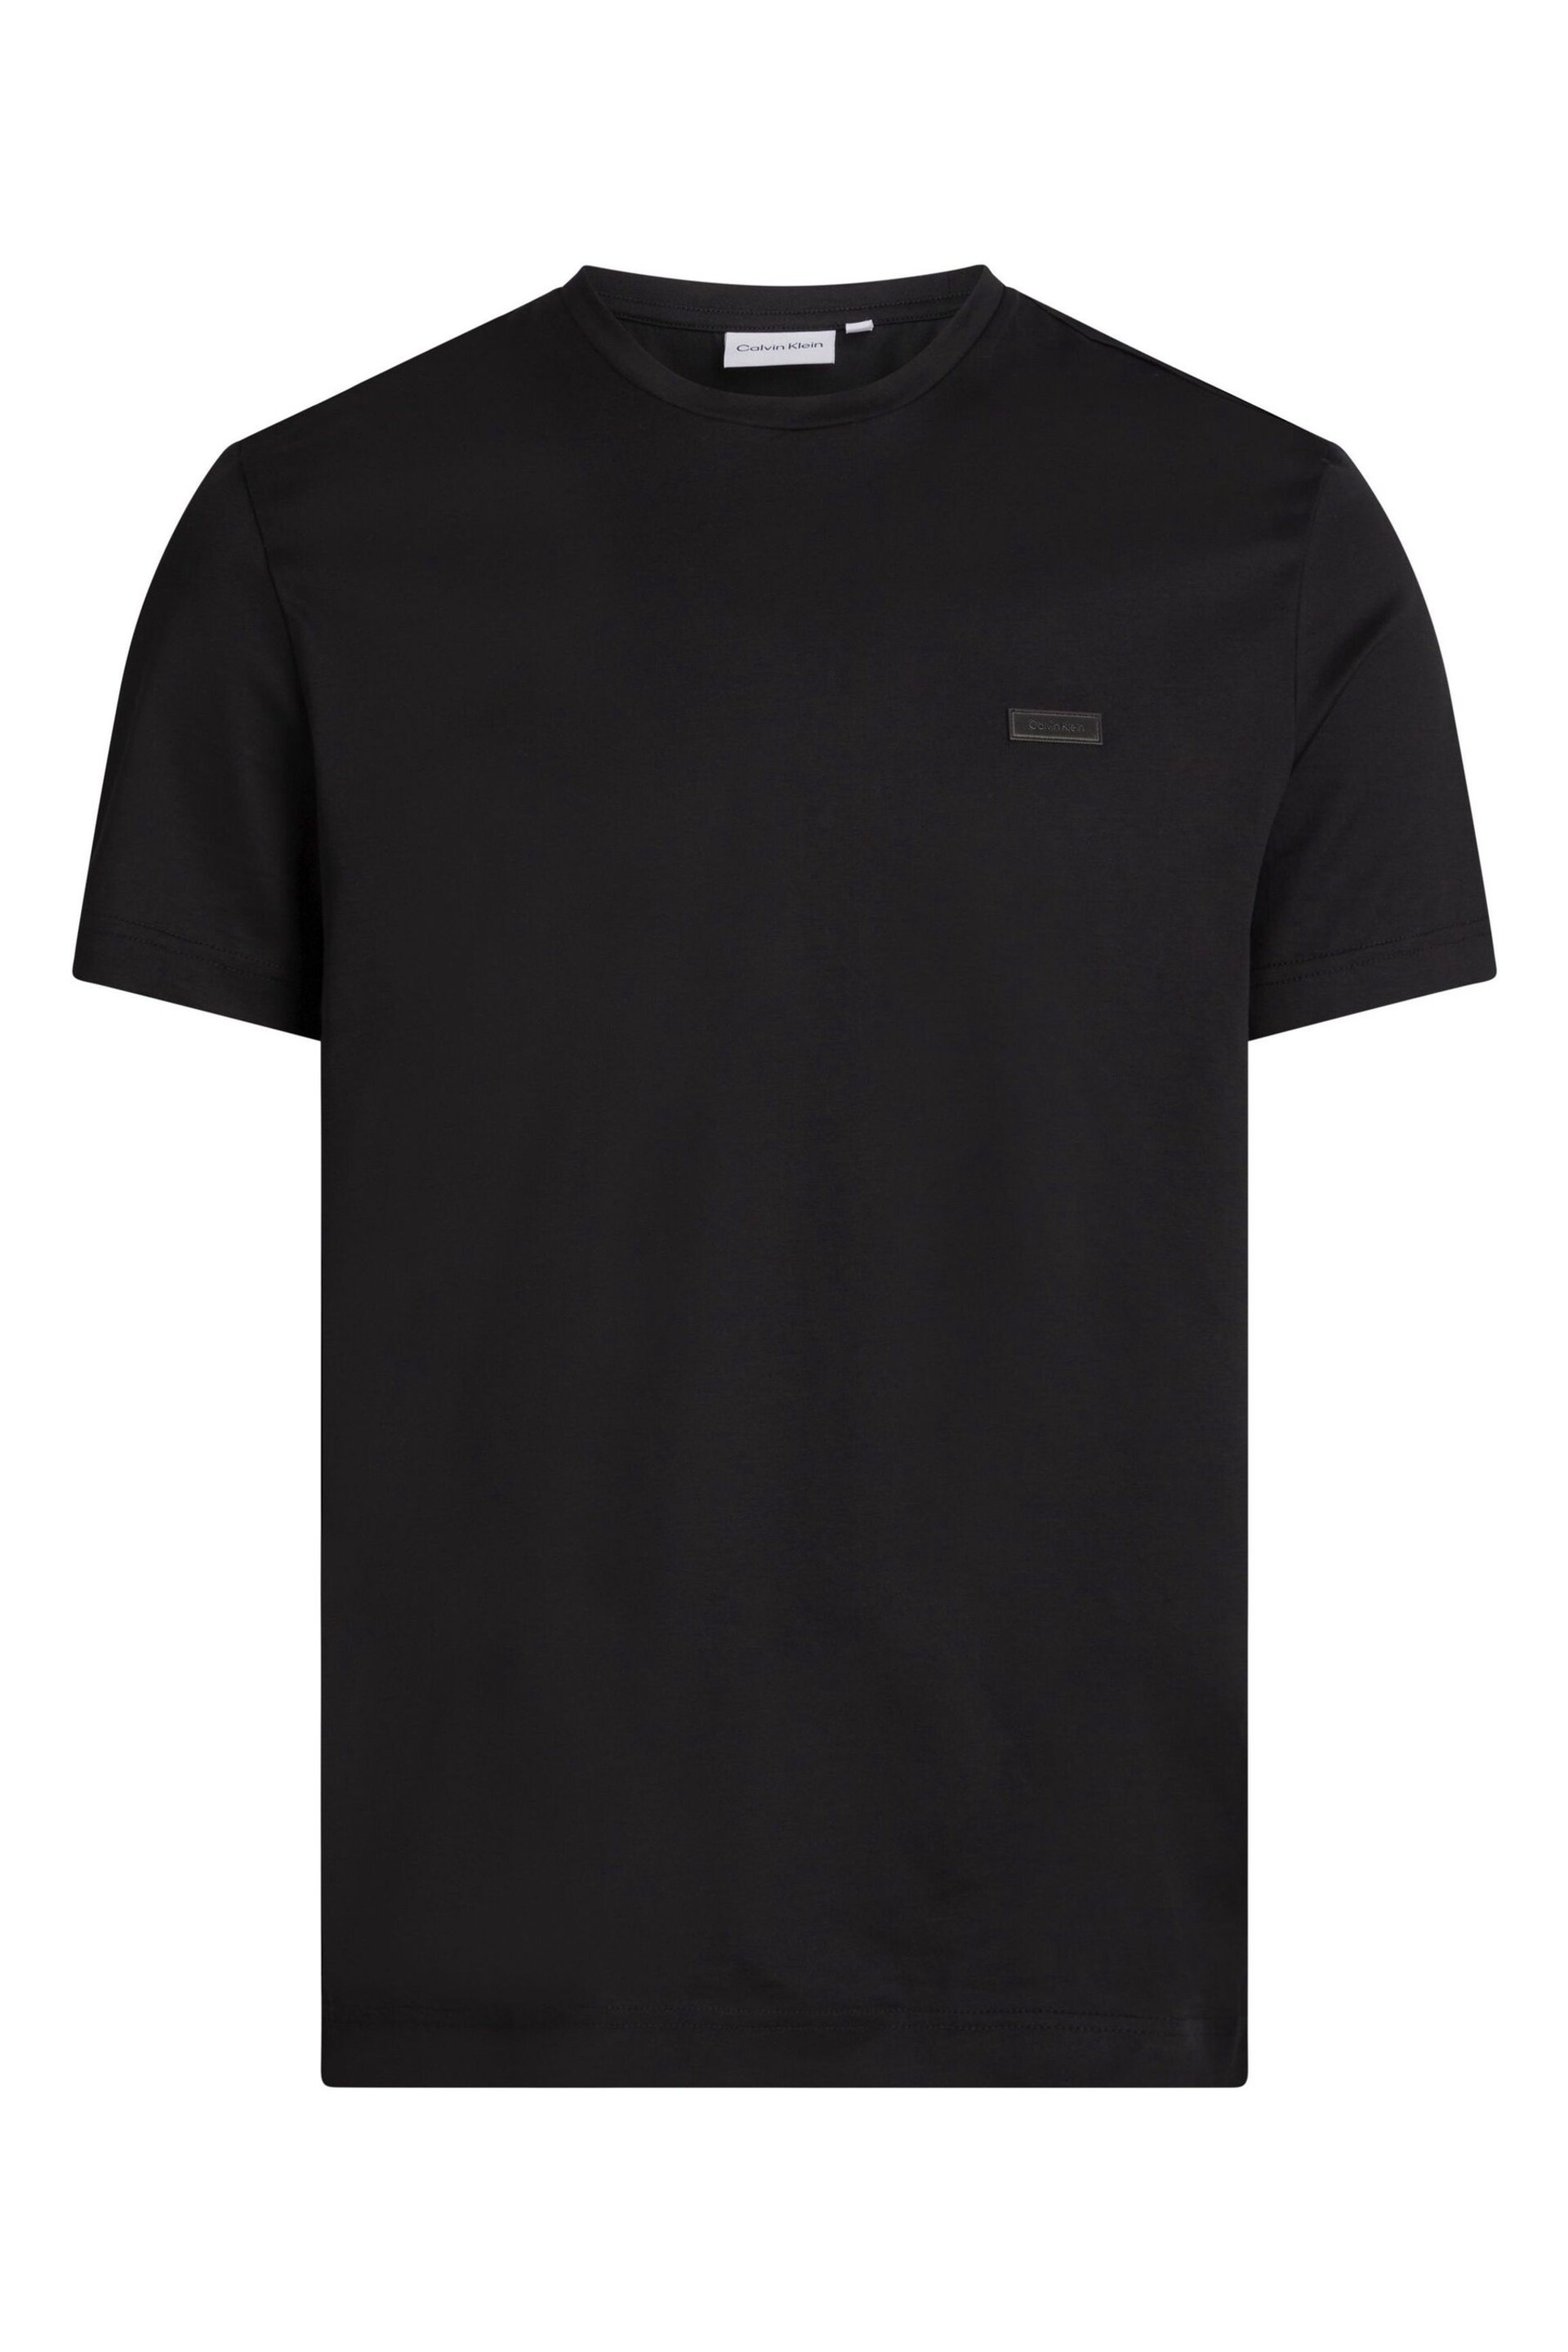 Calvin Klein Black Modern Essentials Cotton T-Shirt - Image 1 of 5